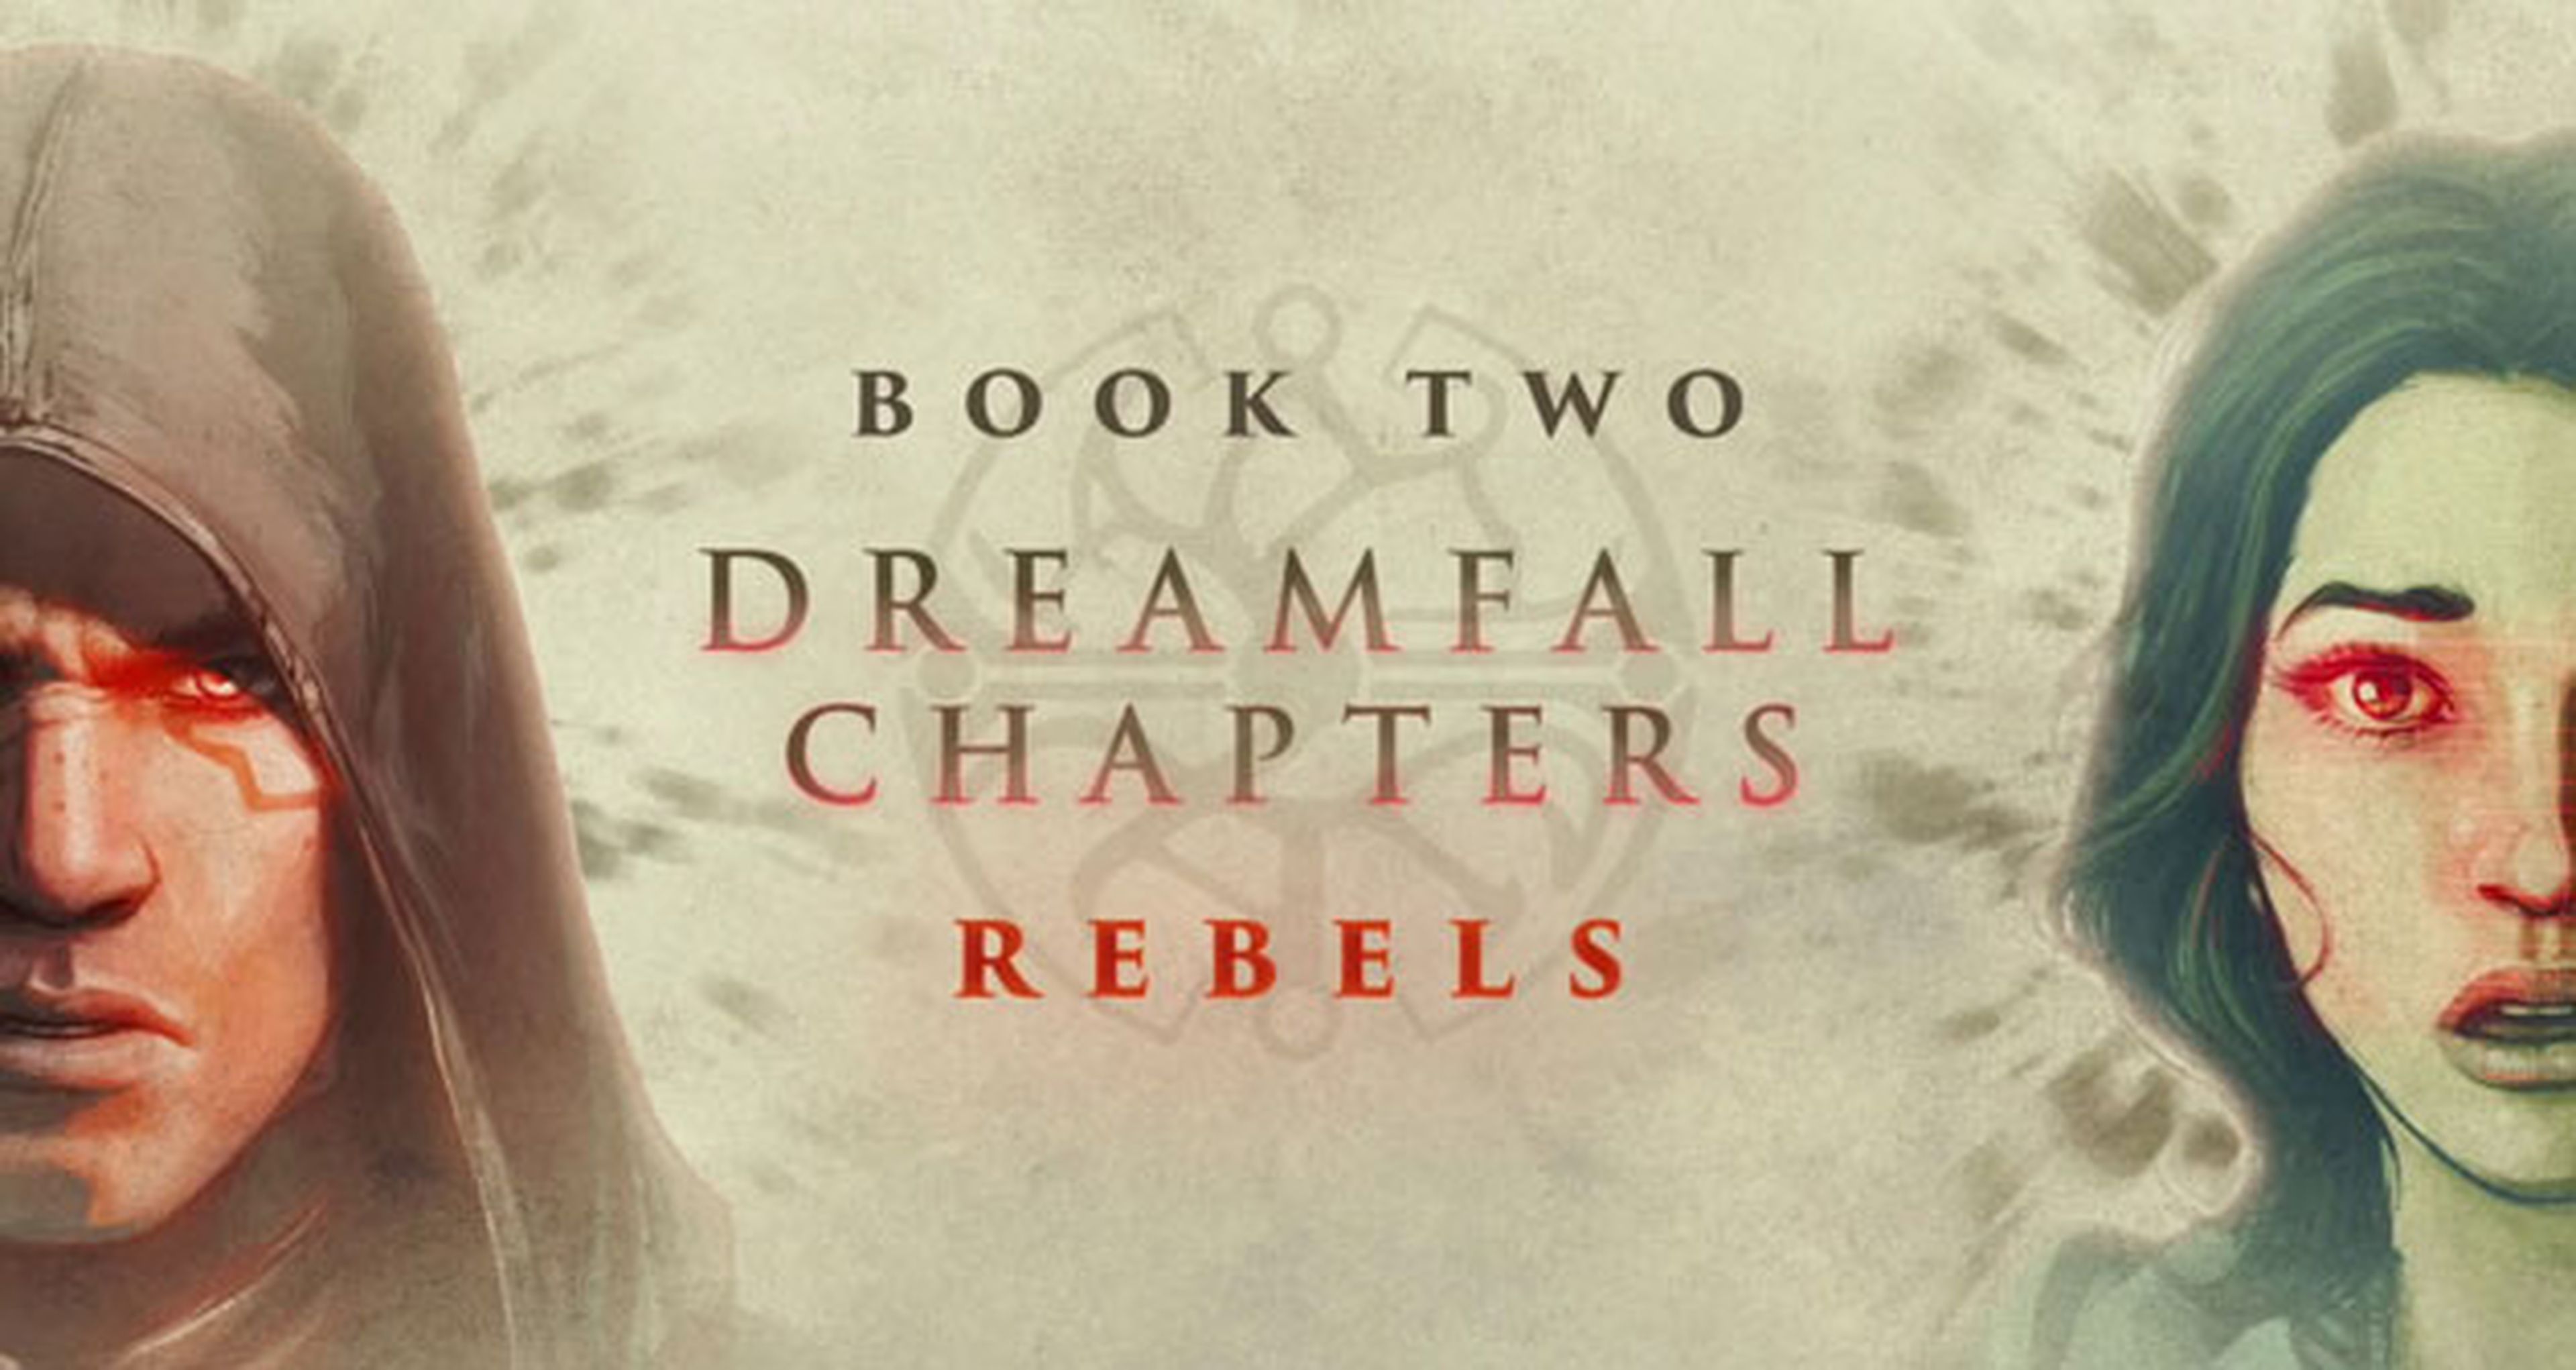 Rebels, segundo episodio de Dreamfall Chapters, desvela su fecha de lanzamiento